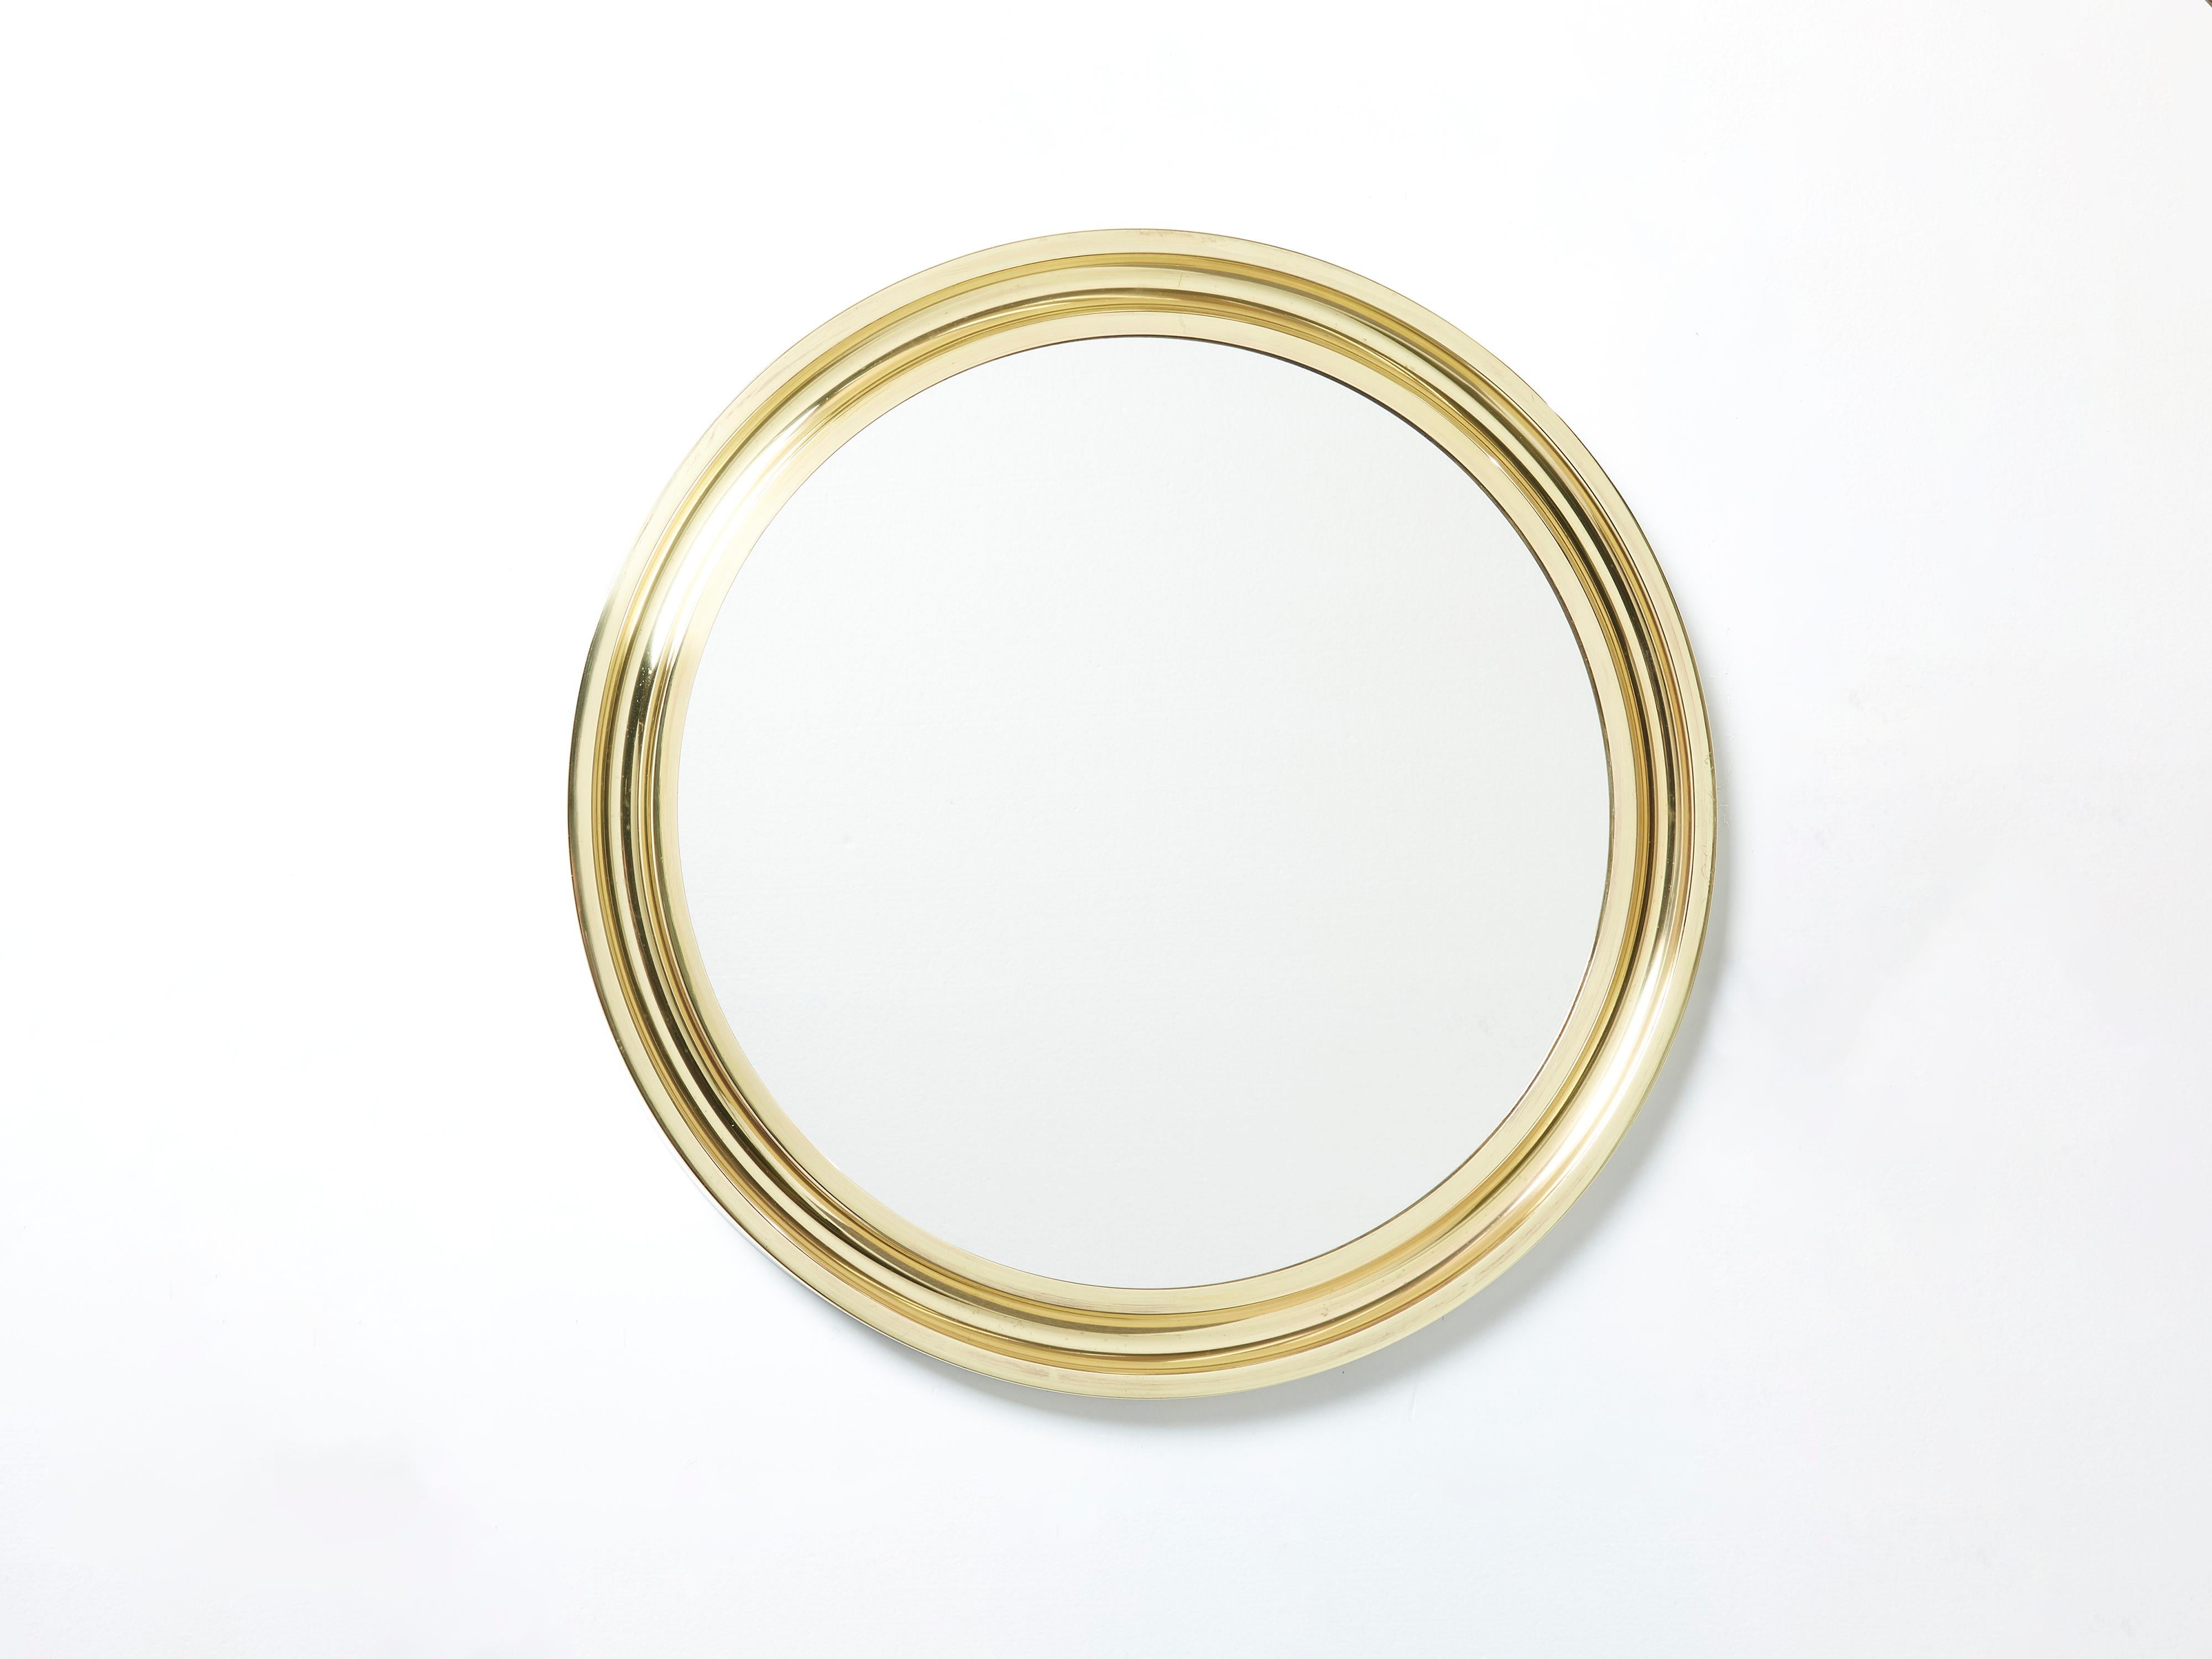 Mit seinem starken geometrischen Design wurde dieser runde Messingspiegel Narciso von dem italienischen Sergio Mazza für Artemide in den späten 1960er Jahren entworfen. Ein perfekter Spiegel für einen Eingangsbereich oder ein Puderzimmer. Dieser